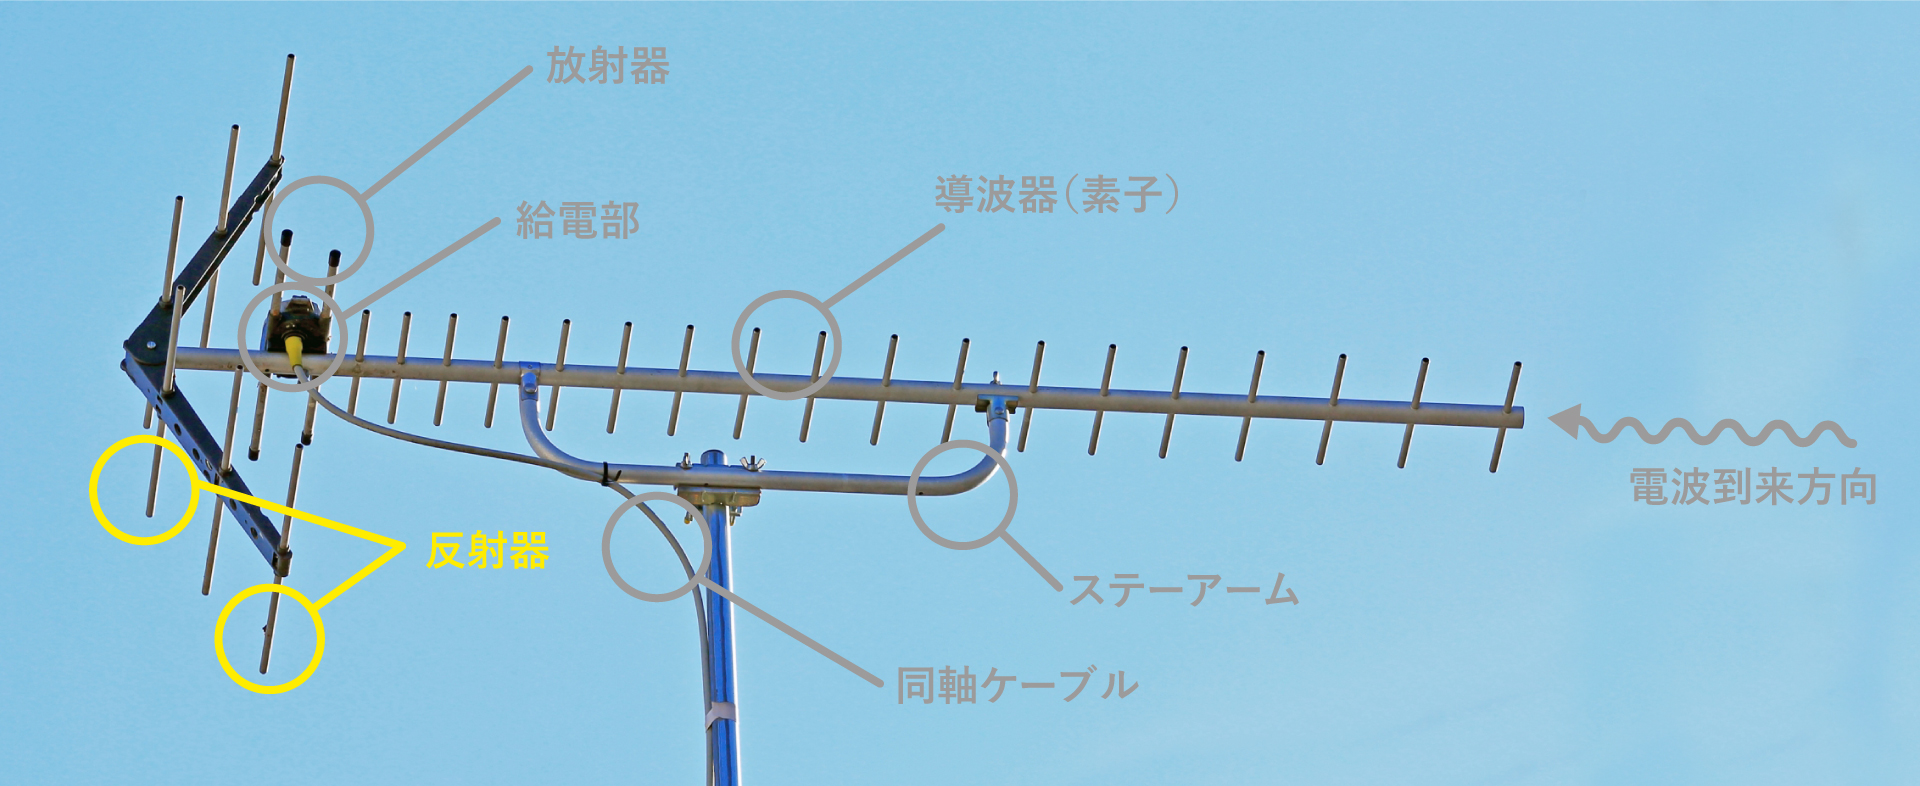 反射器UHFアンテナの各部名称